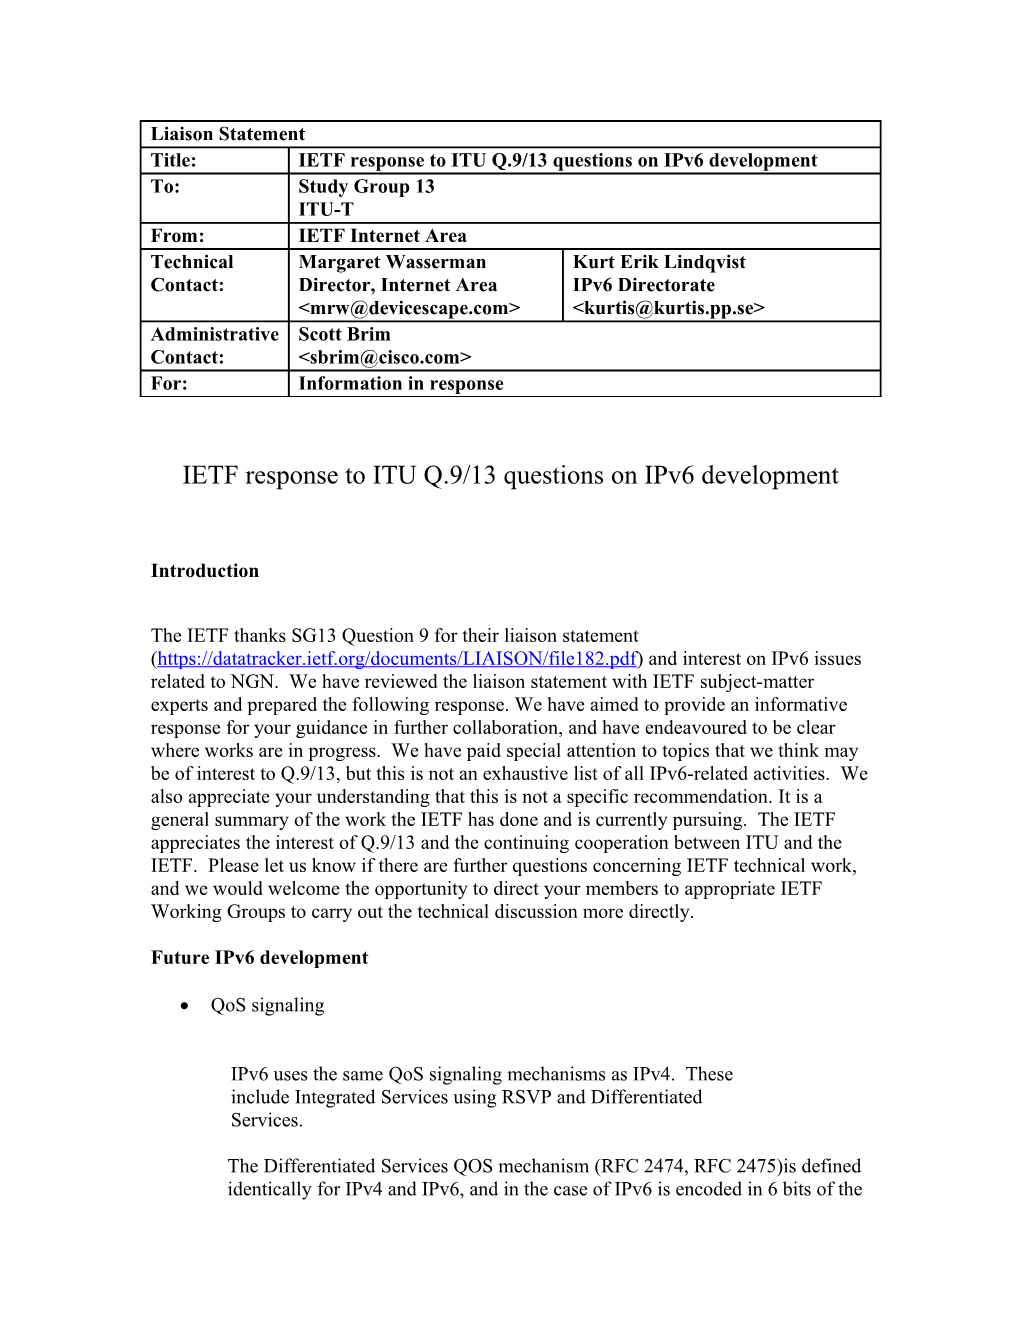 IETF / IAB Response to ITU Q